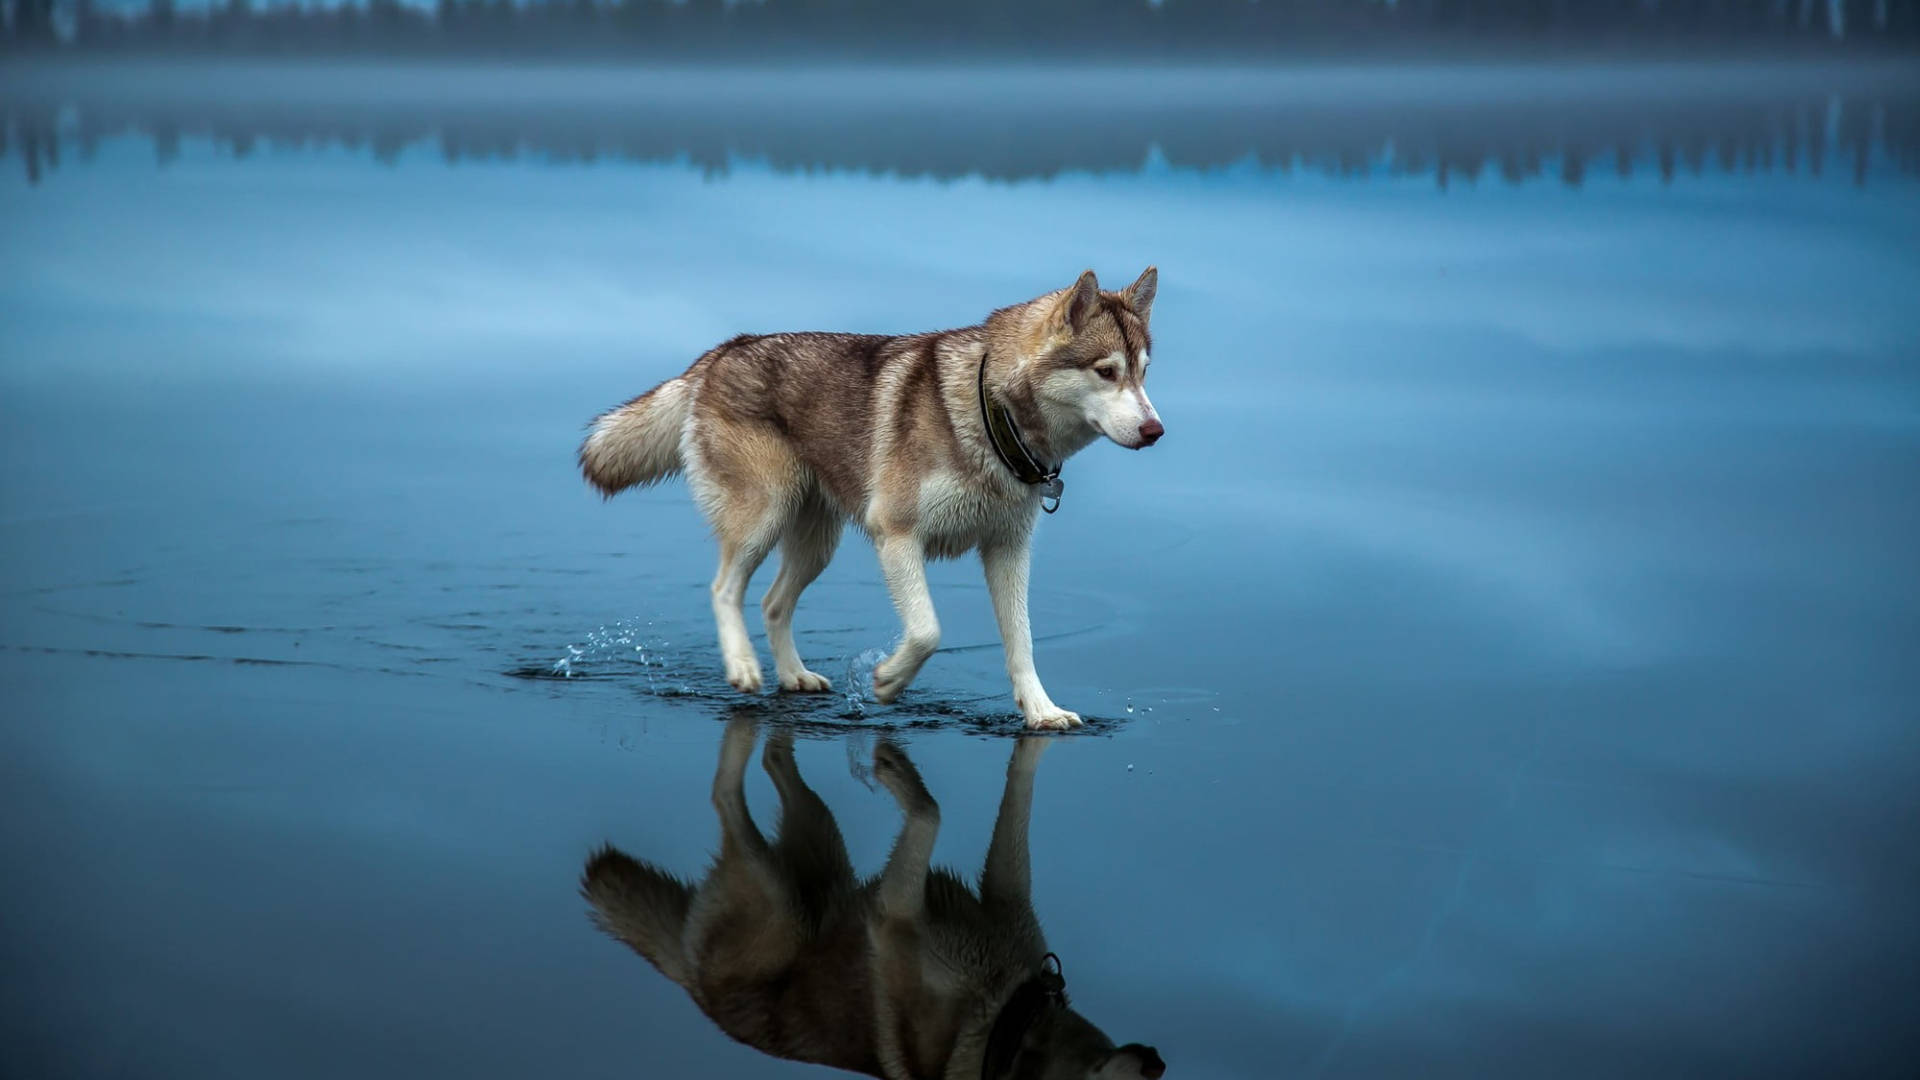 Yahoo Wolf Walking On Water Wallpaper